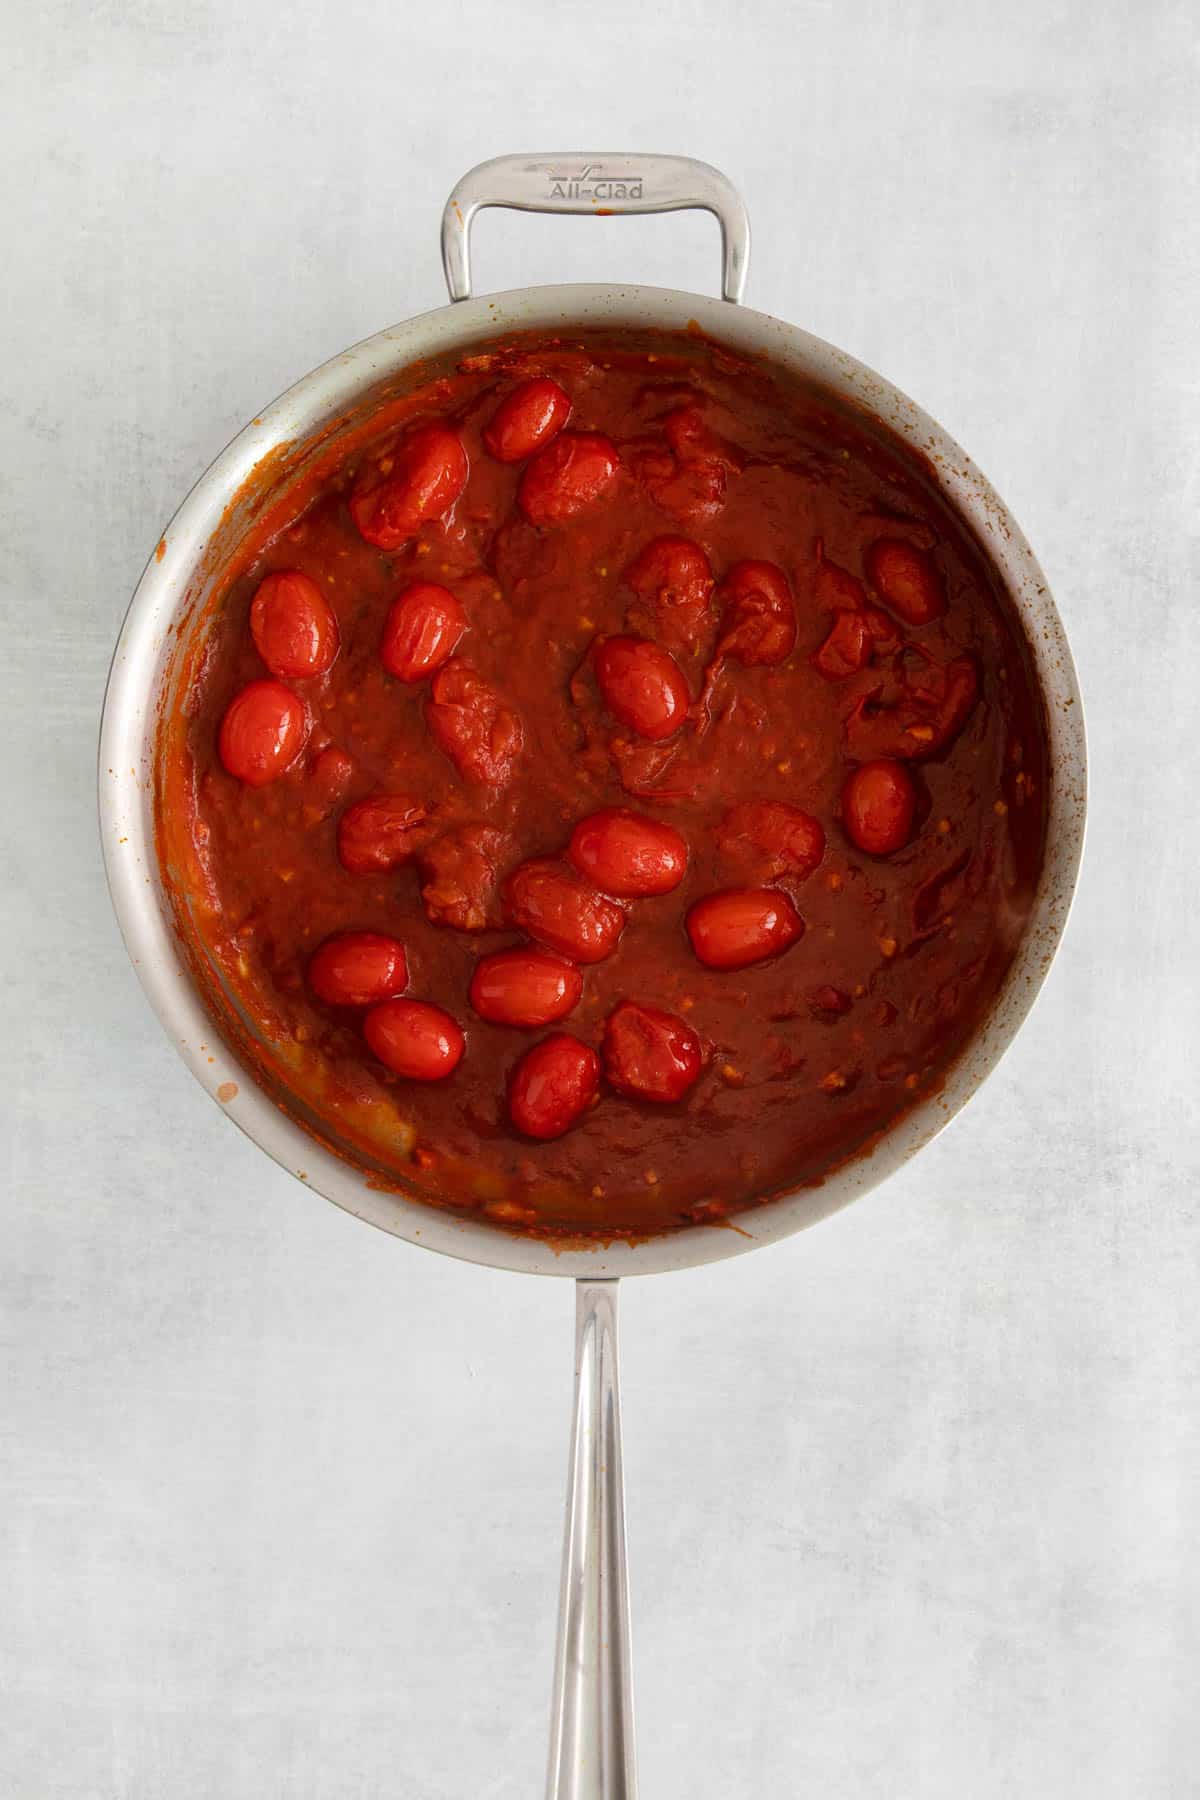 Arrabbiata sauce in a large pan.